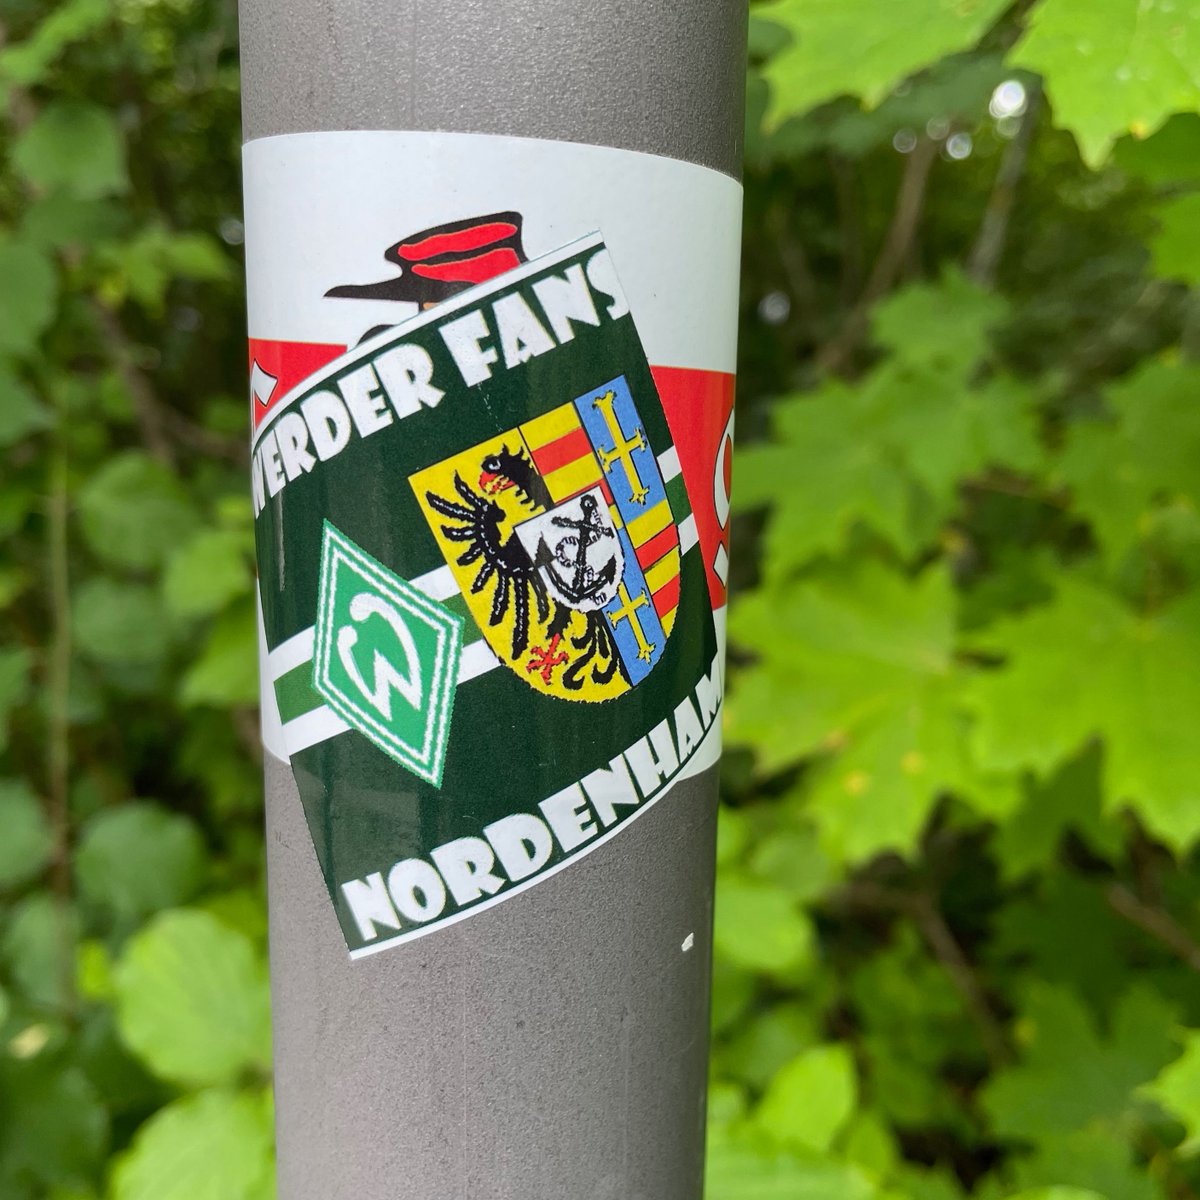 🇩🇪 SV Werder Bremen
@werderbremen @werderbremen_en @werderbremen_jp @BremenBrasil @RetroSVW #Werder
#ultrasstickers #footballstickers #footballculture #Ultras #StickerHunting